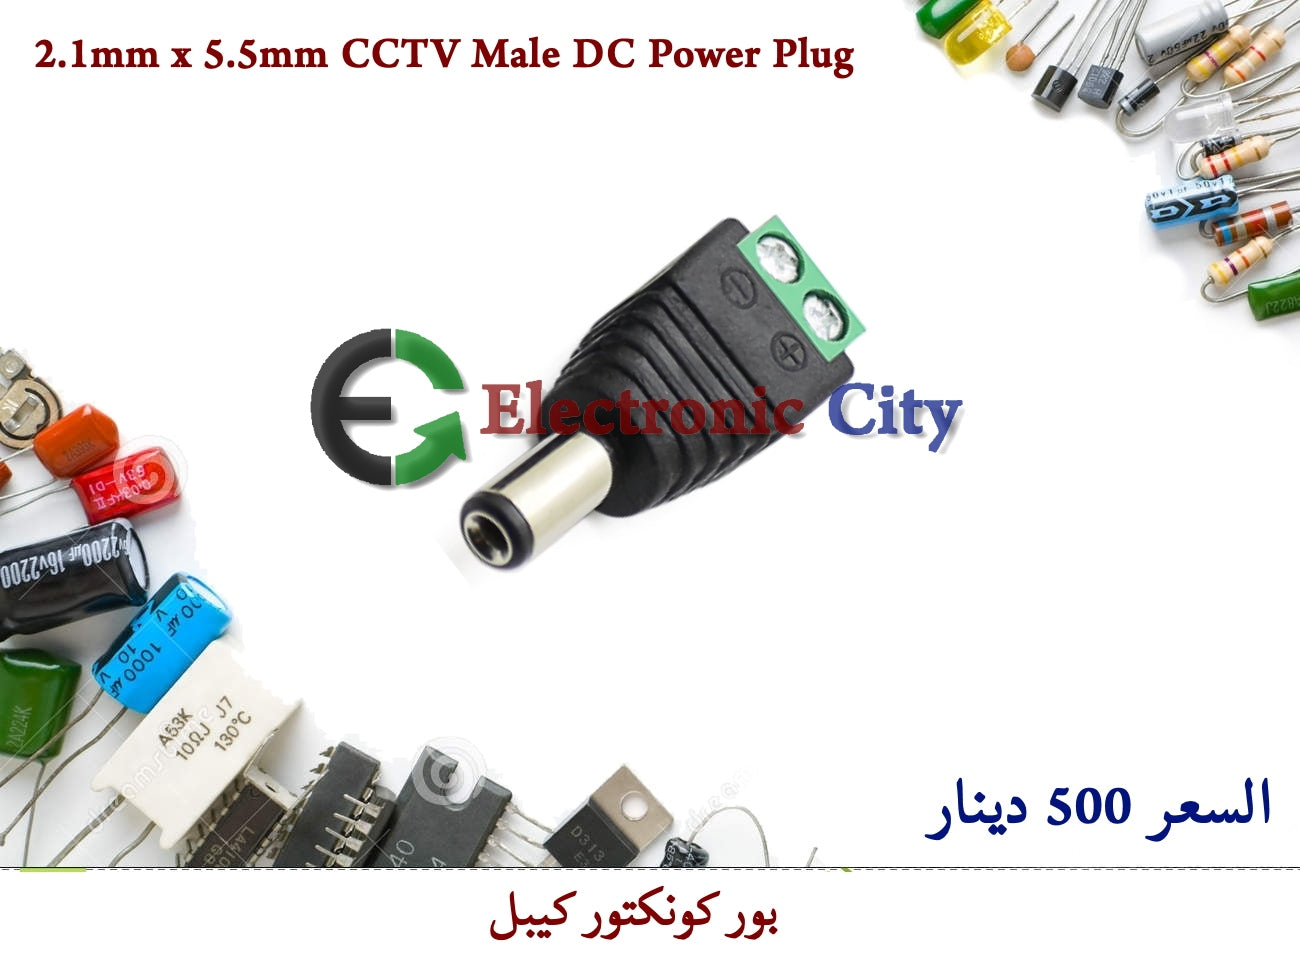 2.1mm x 5.5mm CCTV Male DC Power Plug